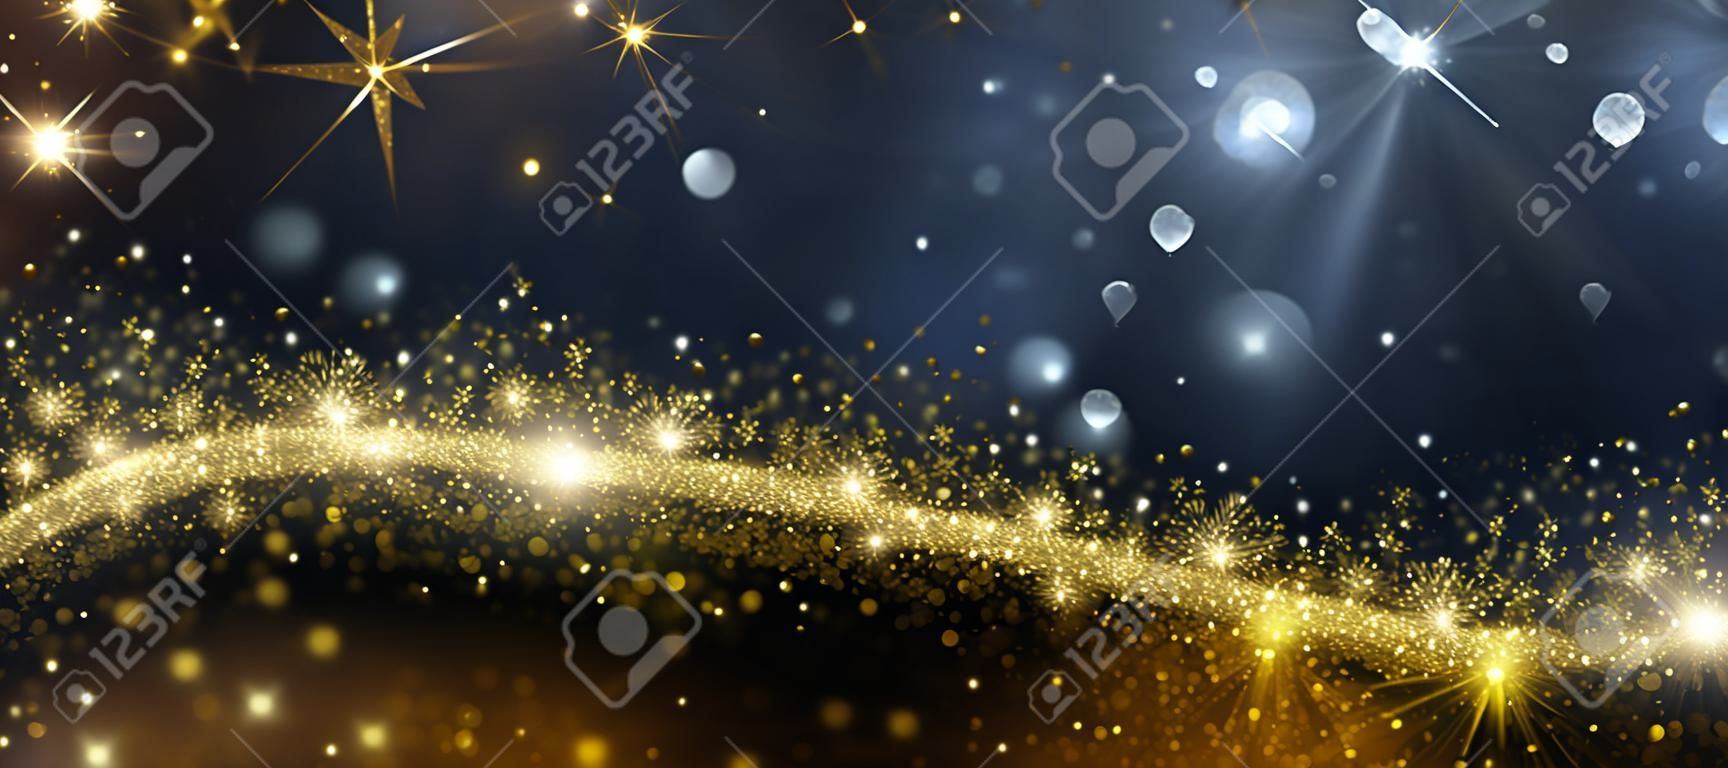 Kerstmis achtergrond met gouden magische ster met bokeh effecten. Vector illustratie